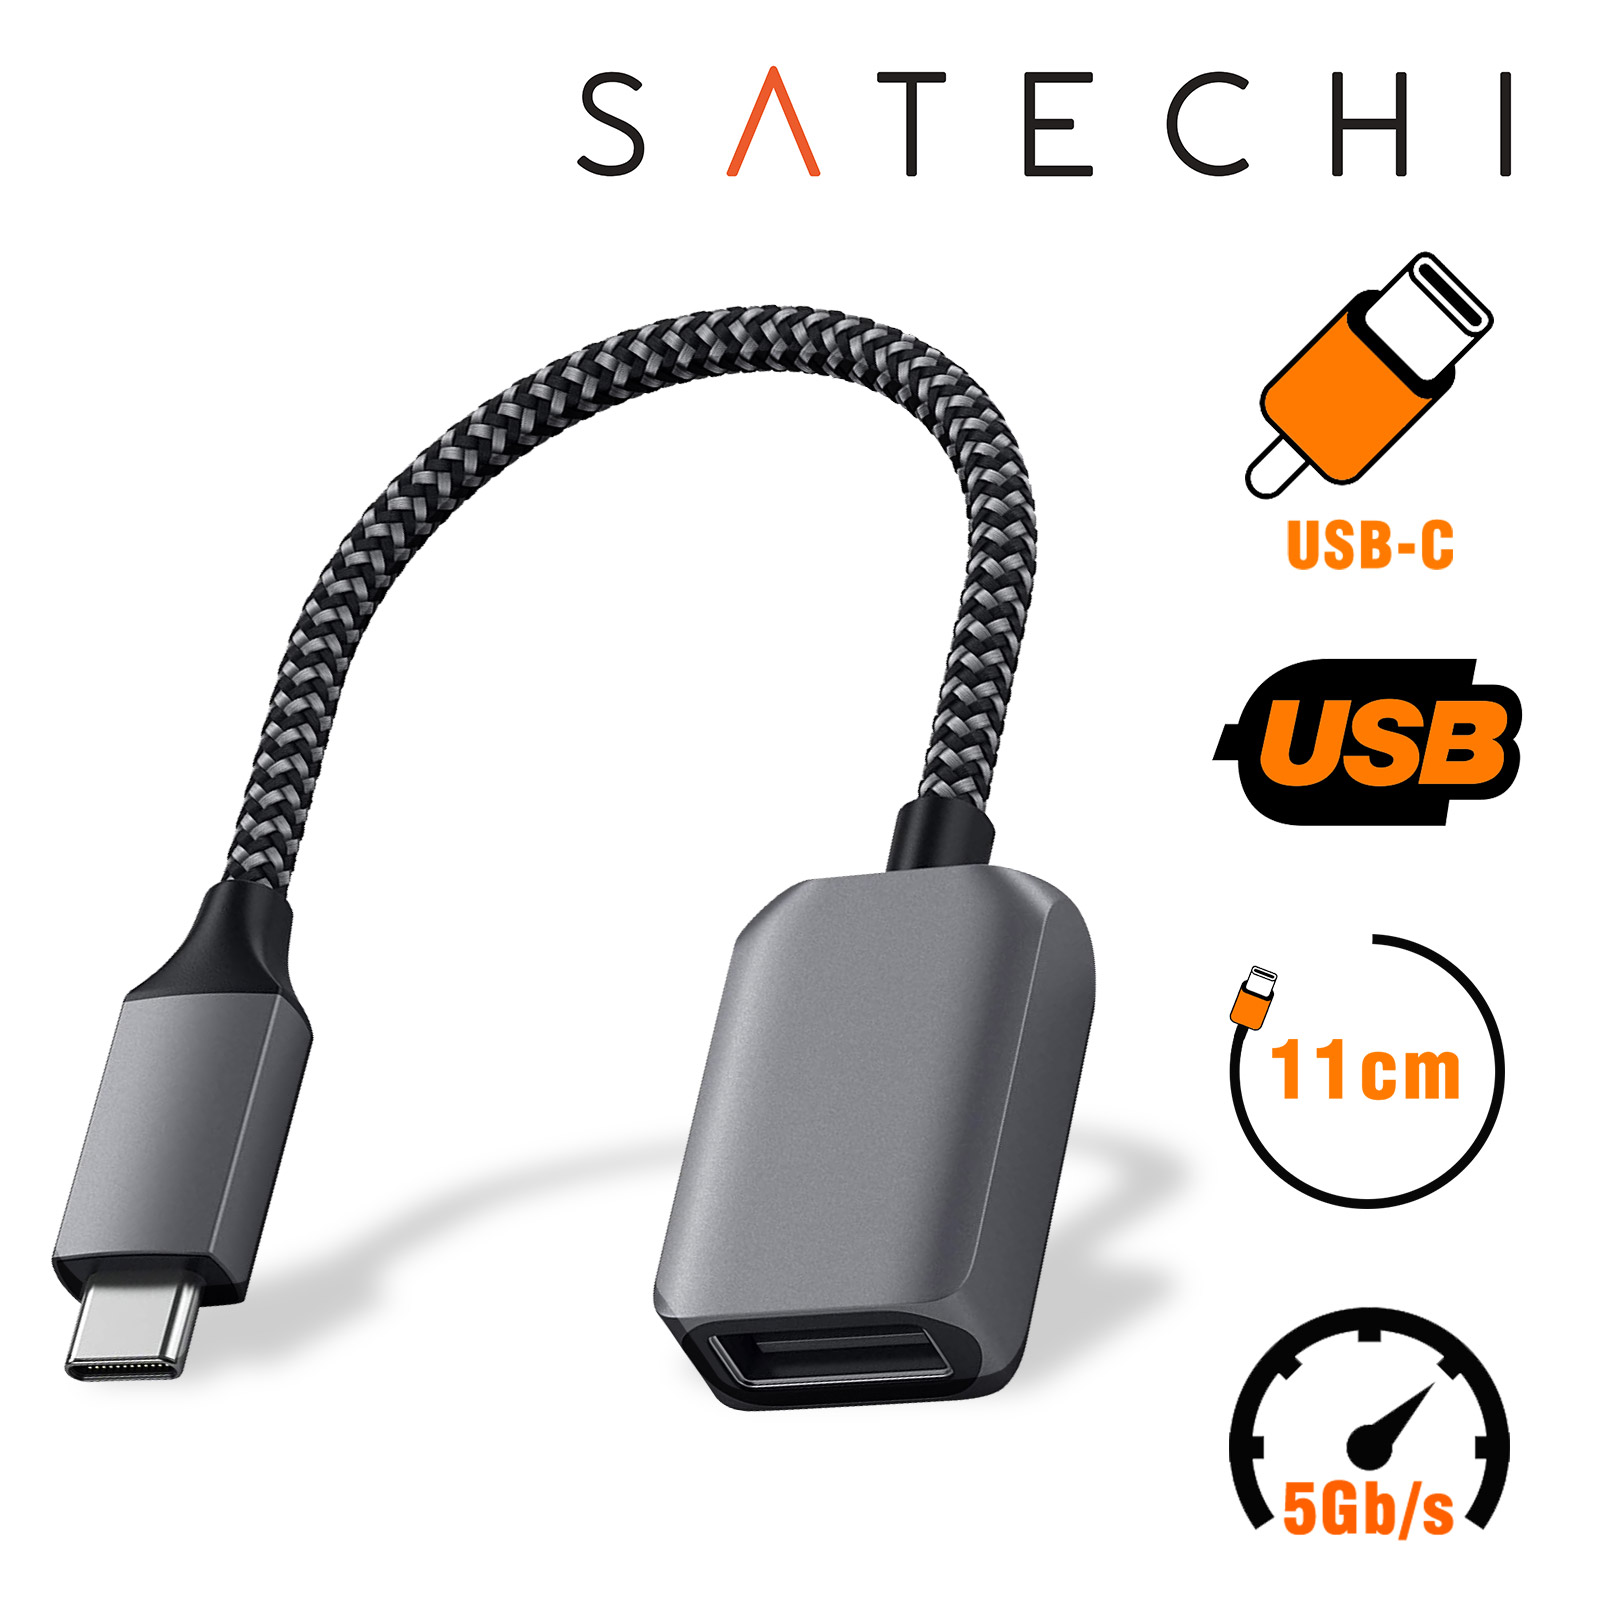 Adaptateur Satechi USB 3.0 vers Usb type C, Cable durable Transfert rapide  - Argent - Français